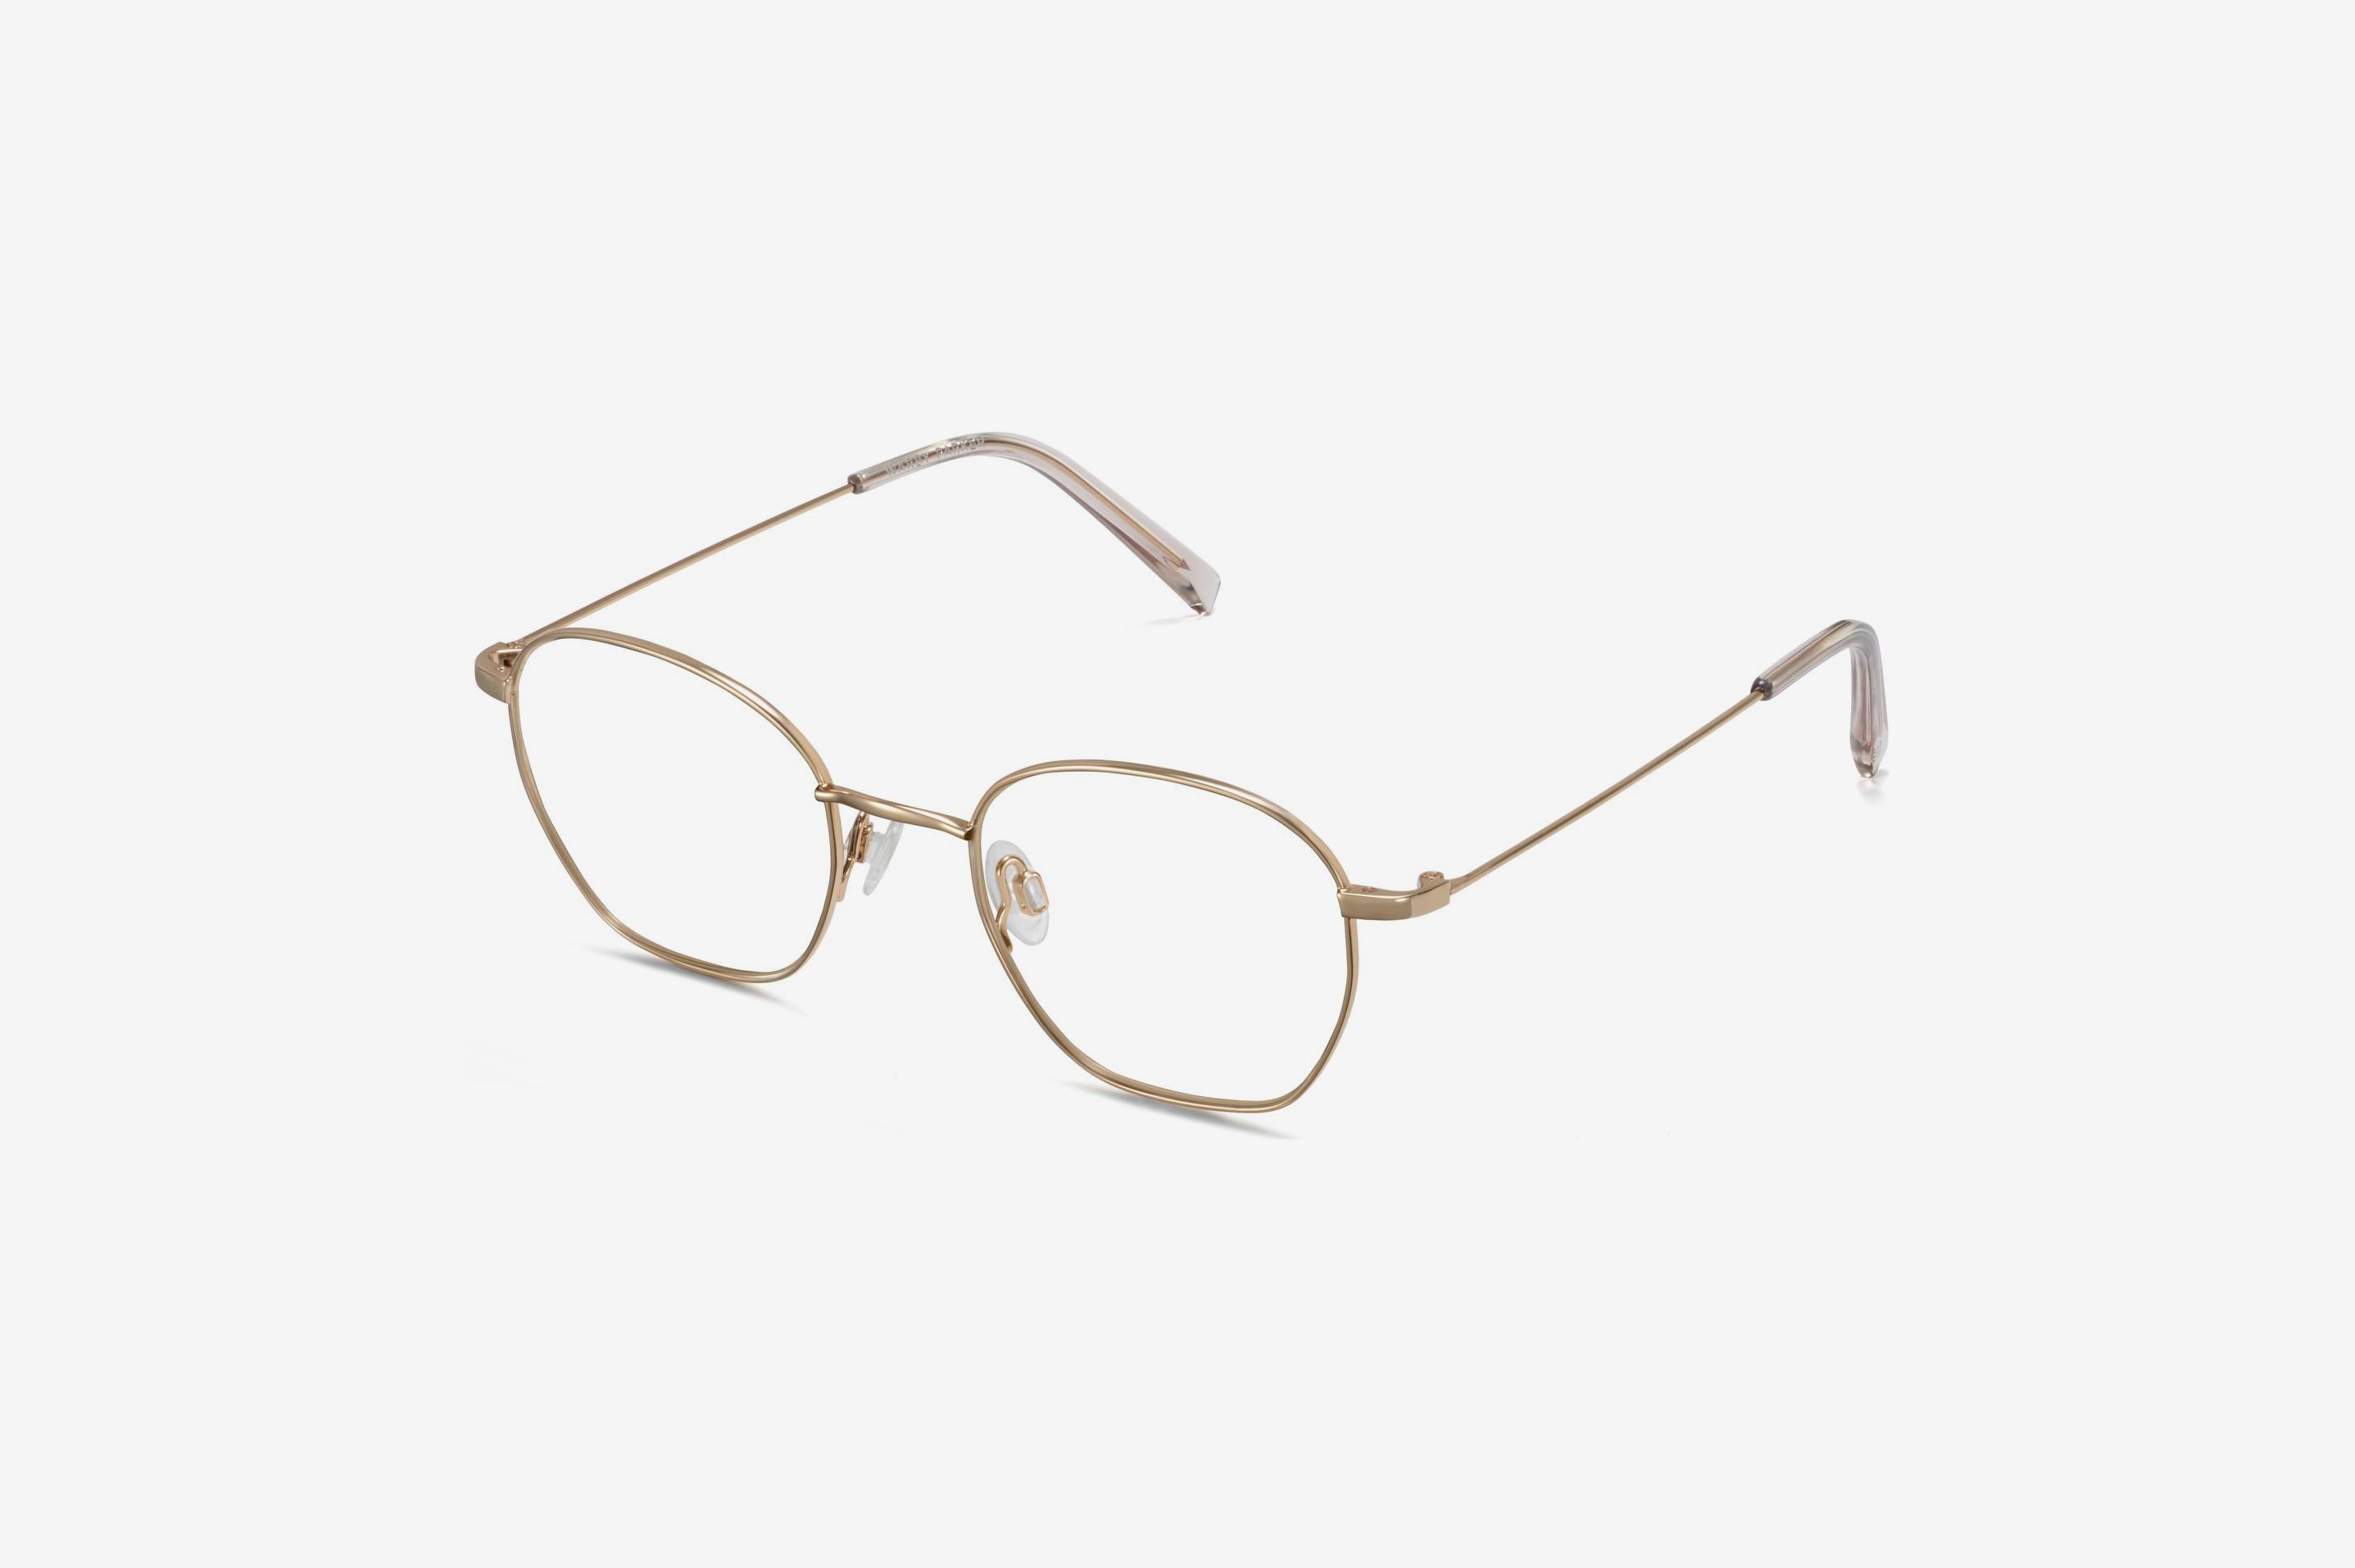 Trending - Our Top Glasses Frames for Women - Specsforvets